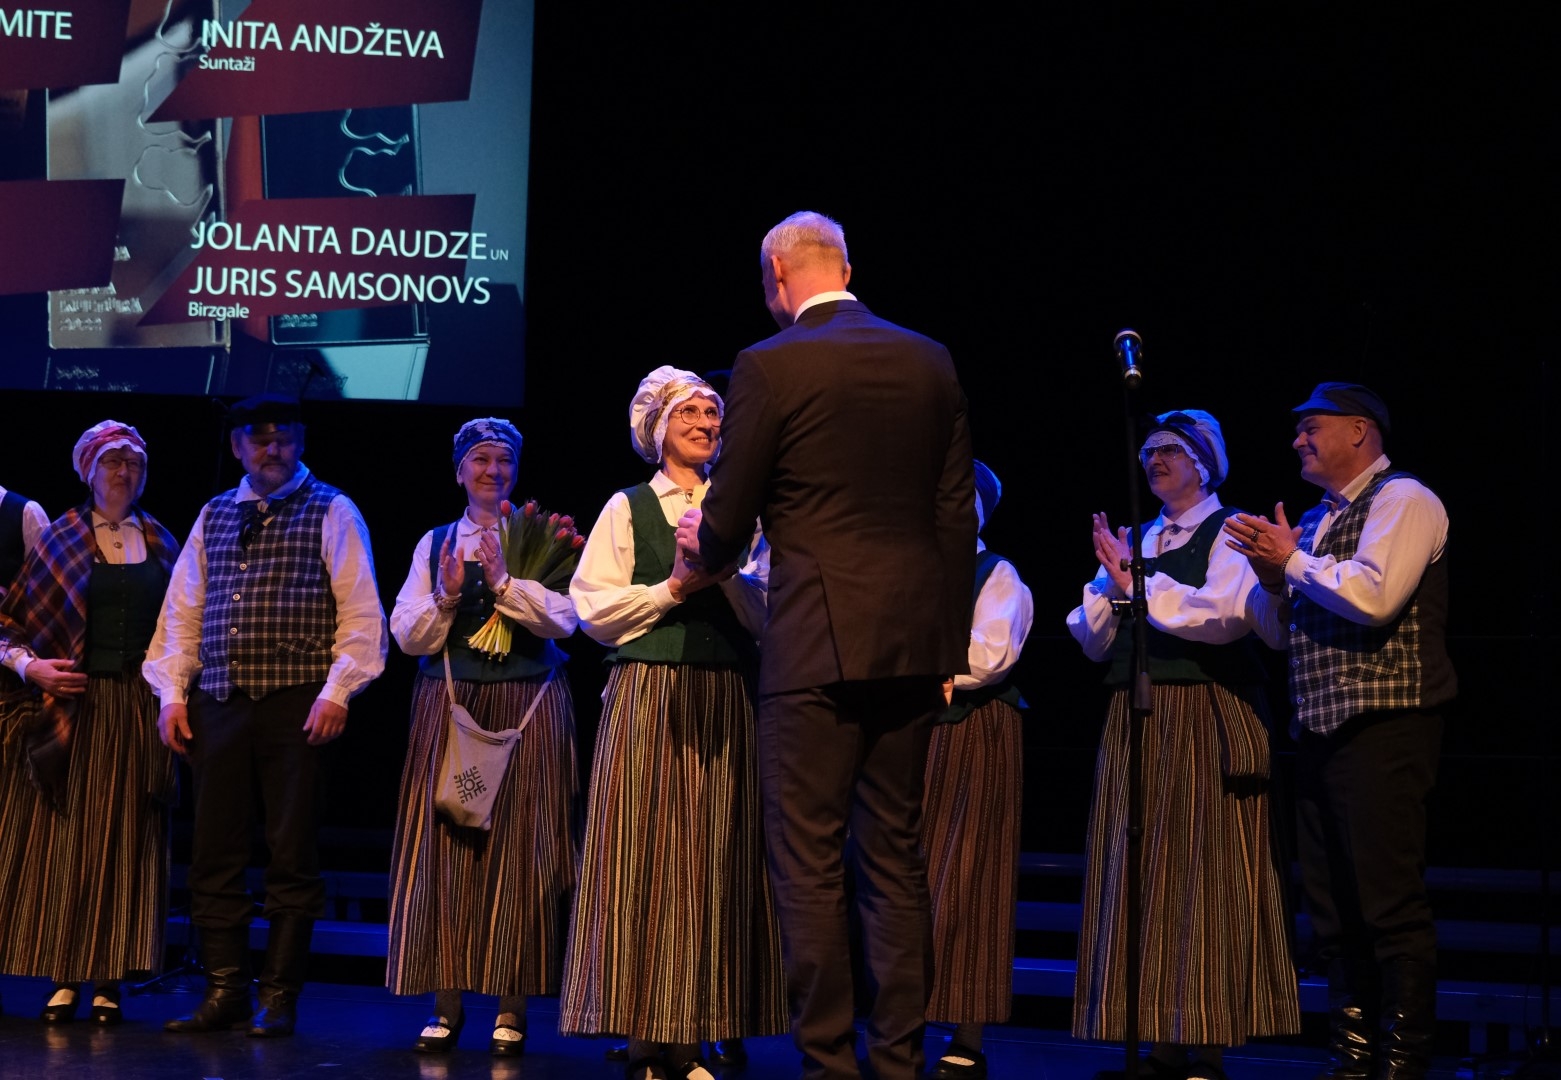 Nominācijā PŪRA LĀDE par latvisko svētku tradīciju saglabāšanu, popularizēšanu un attīstības veicināšanu balvu saņēma Tomes folkloras kopa GRAUDI